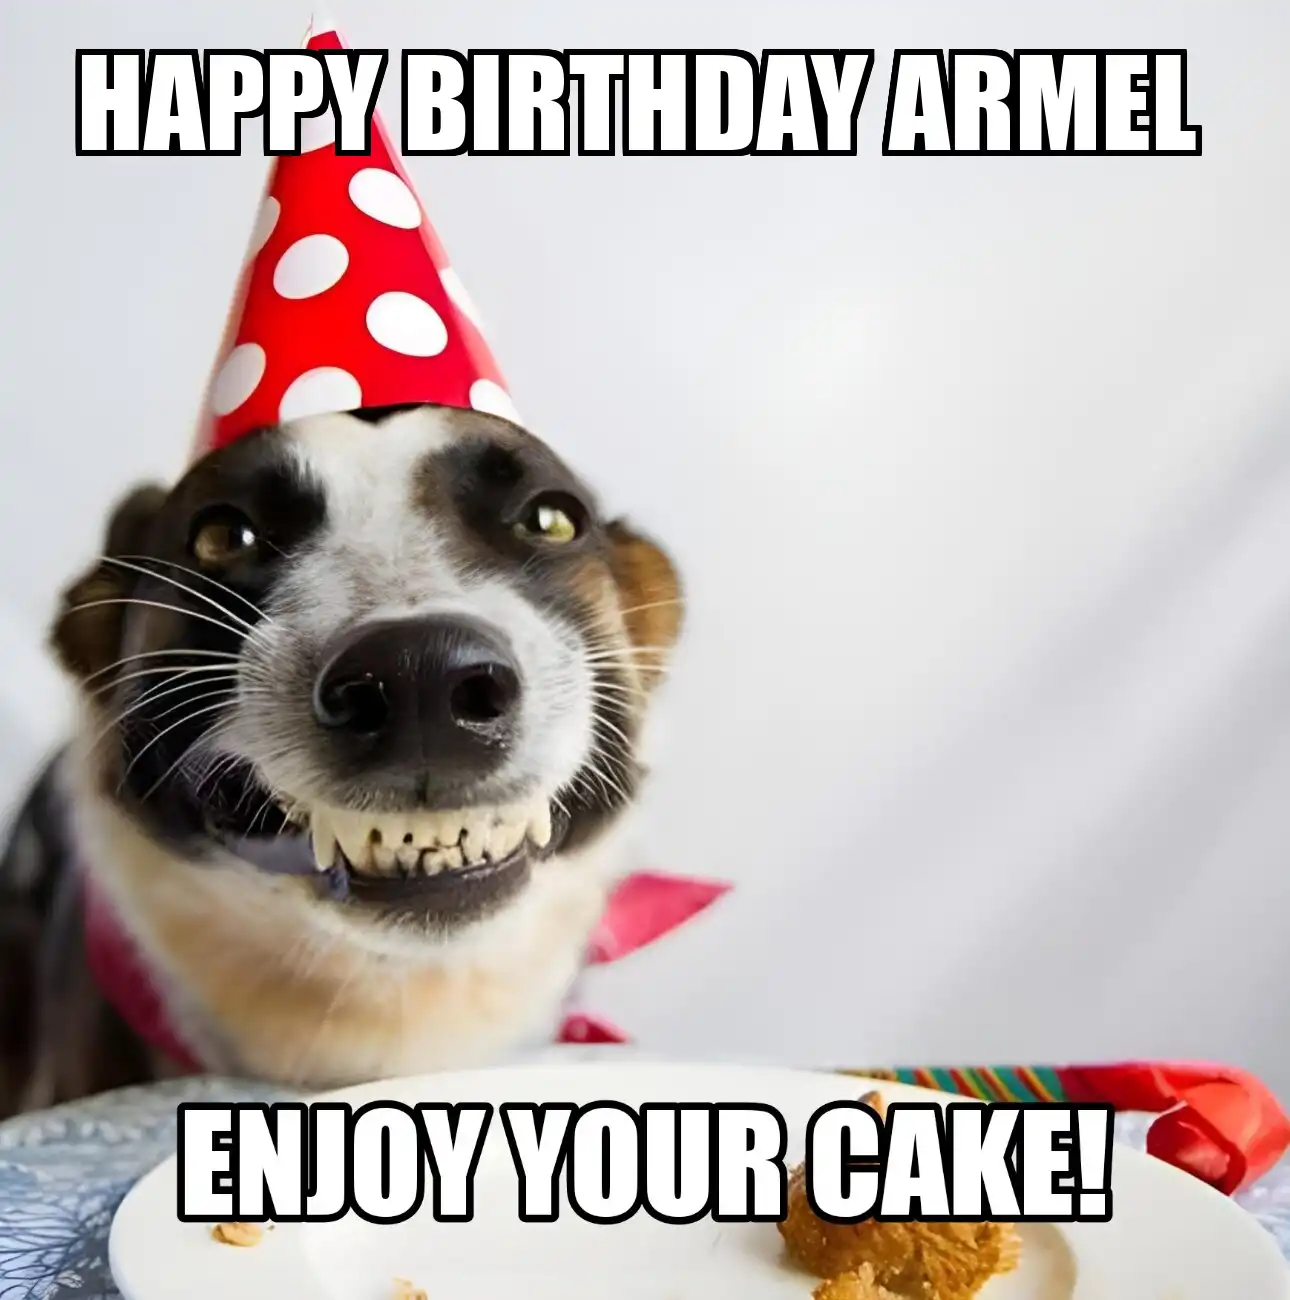 Happy Birthday Armel Enjoy Your Cake Dog Meme